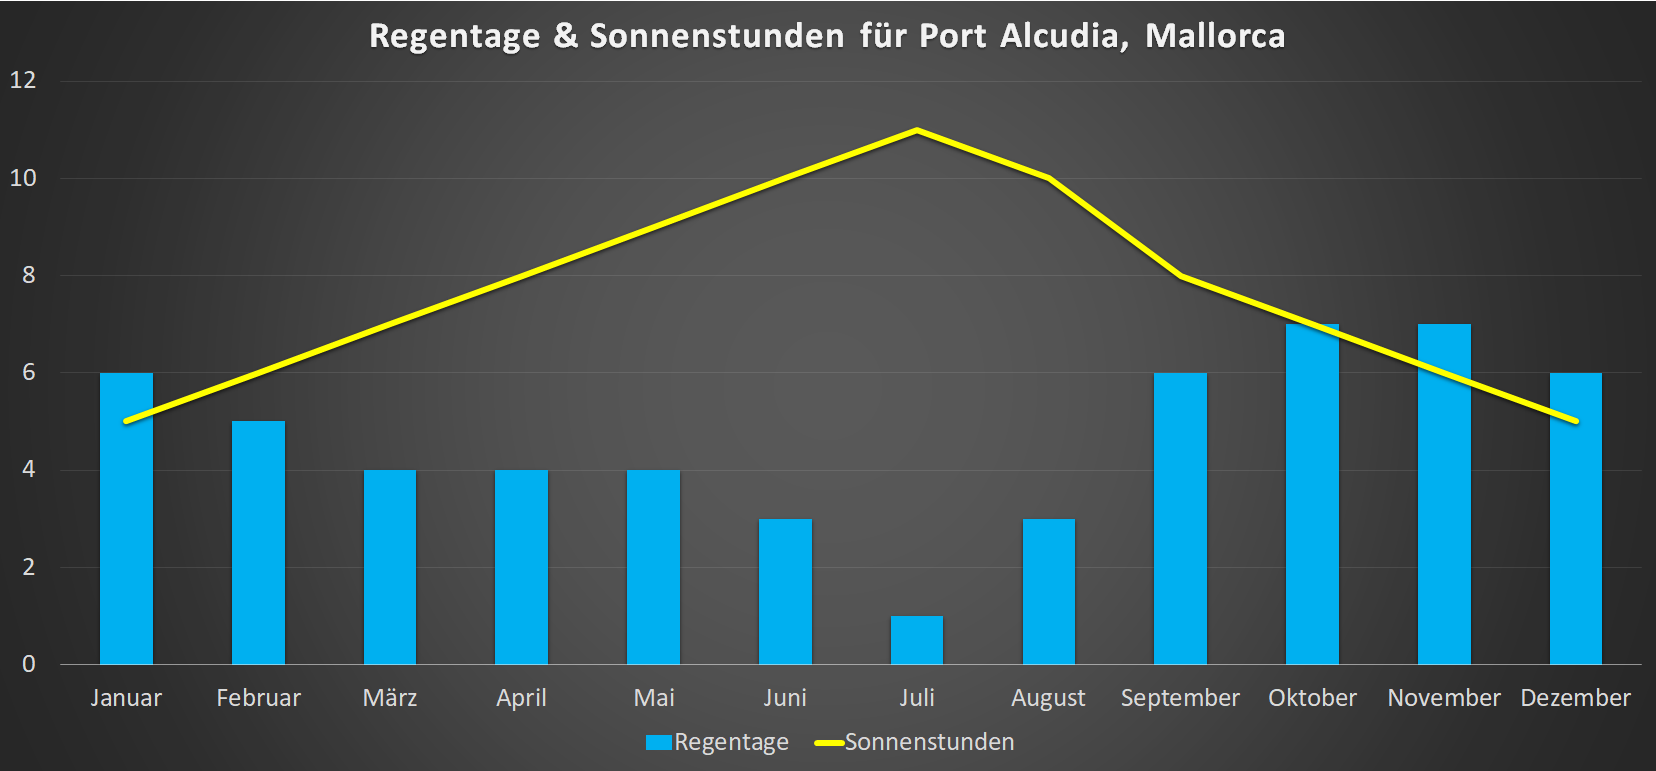 Regentage & Sonnenstunden für Port Alcudia im Jahresverlauf